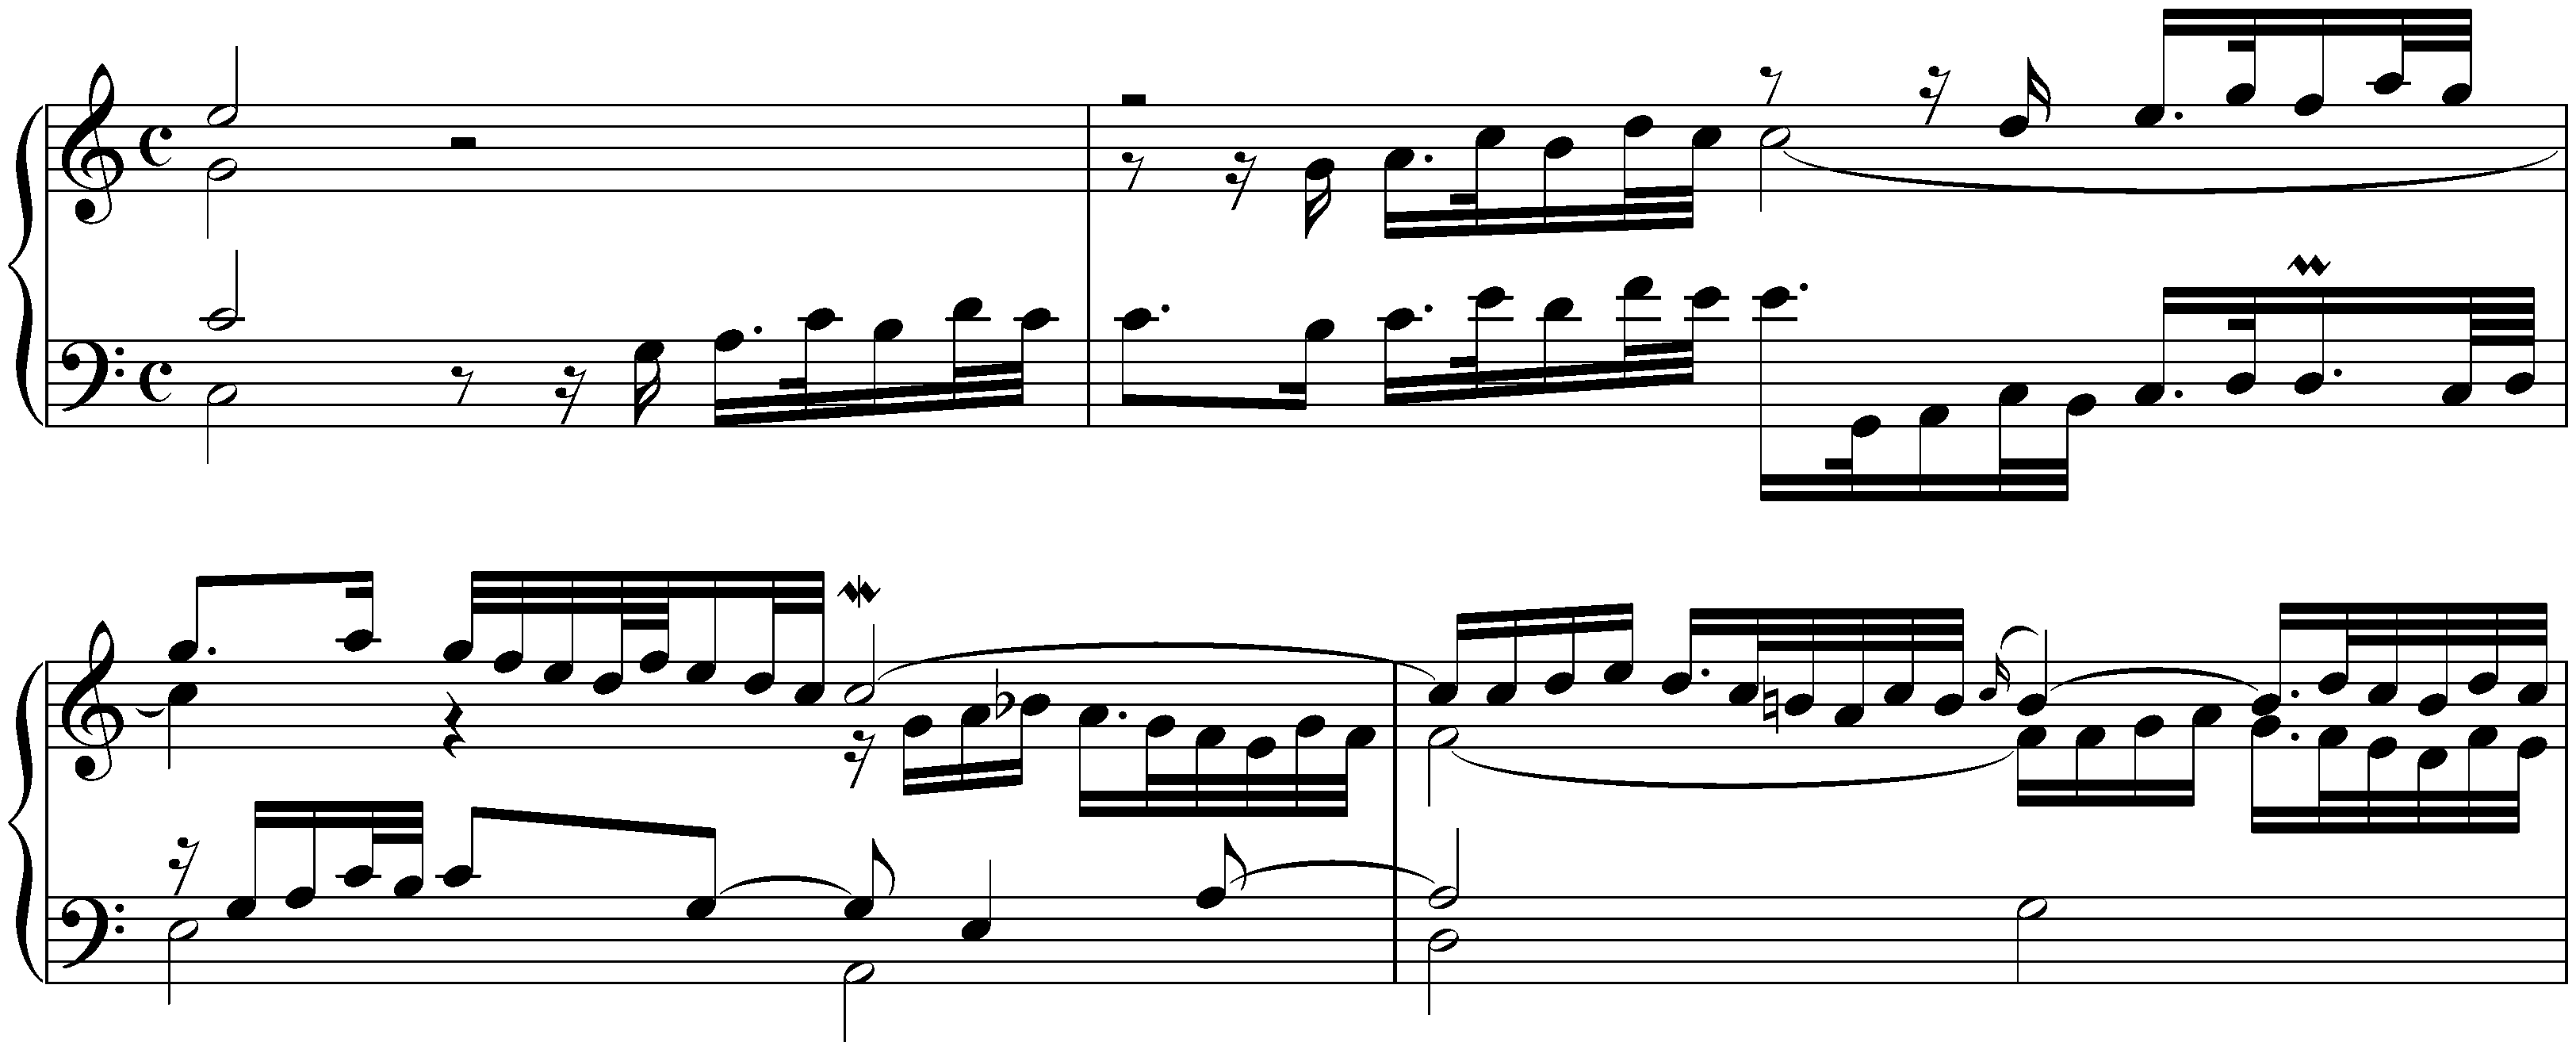 Sonata in C major after Johann Adam Reincken, BWV 966; 1. Praeludium